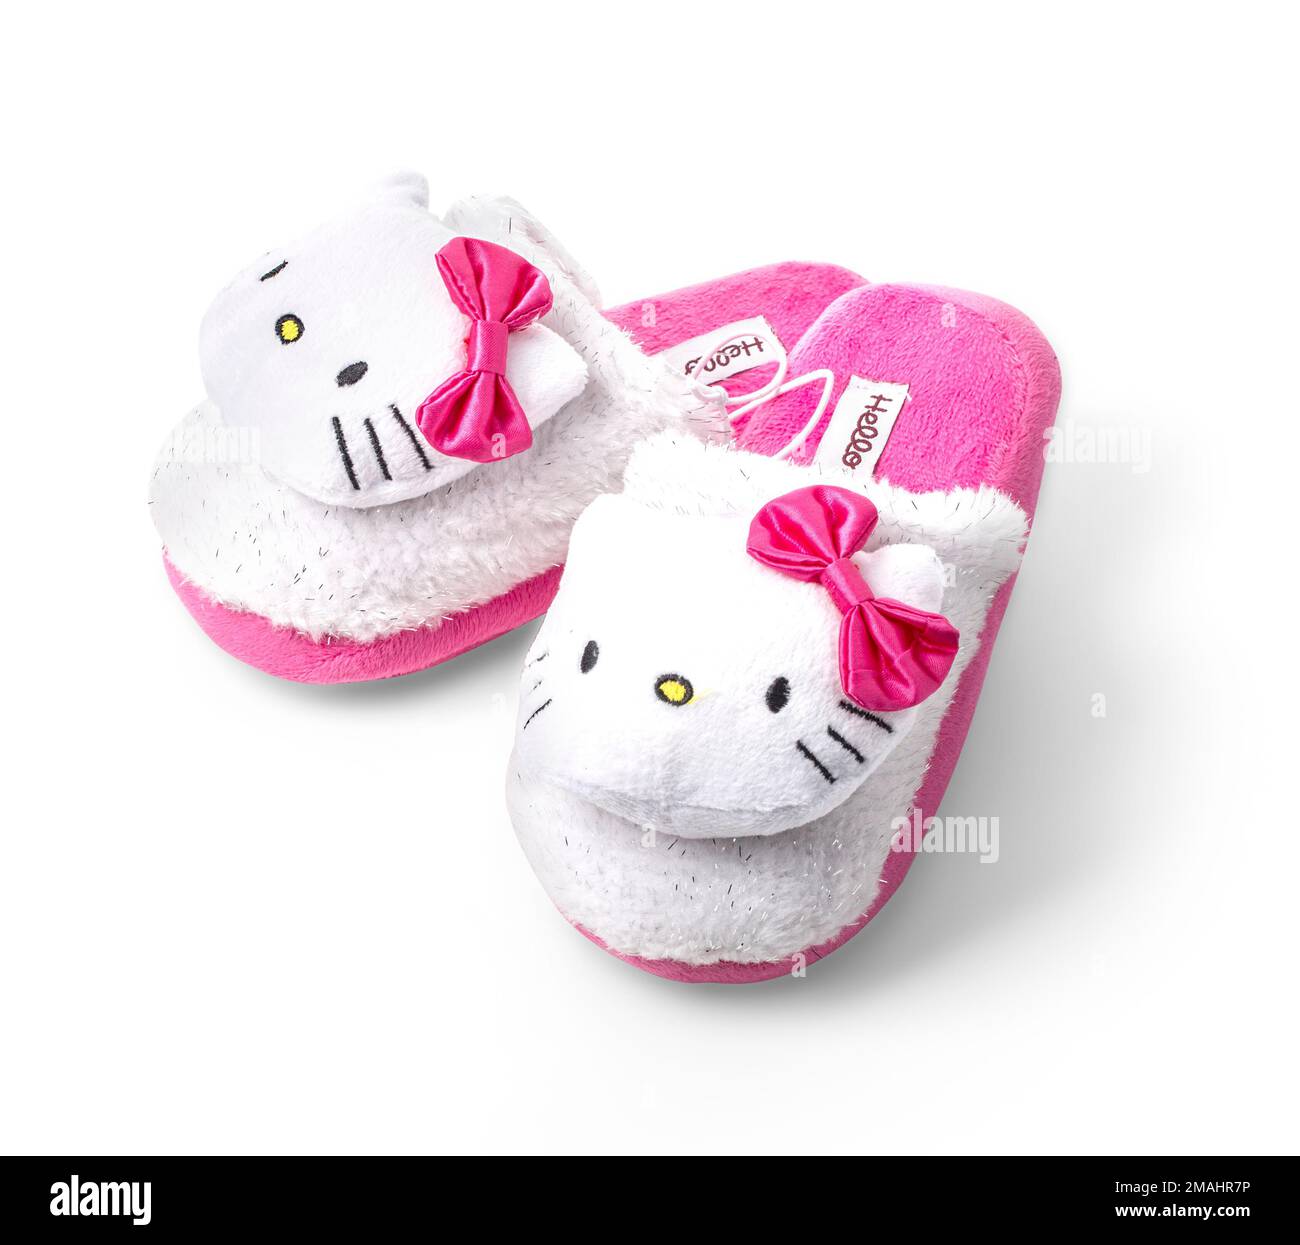 CHISINAU, MOLDOVA - DecemberL 24, 2015: Hello Kitty baby slippers. Hello Kitty is a cartoon character produced by the Japanese company Sanrio, Illustr Stock Photo